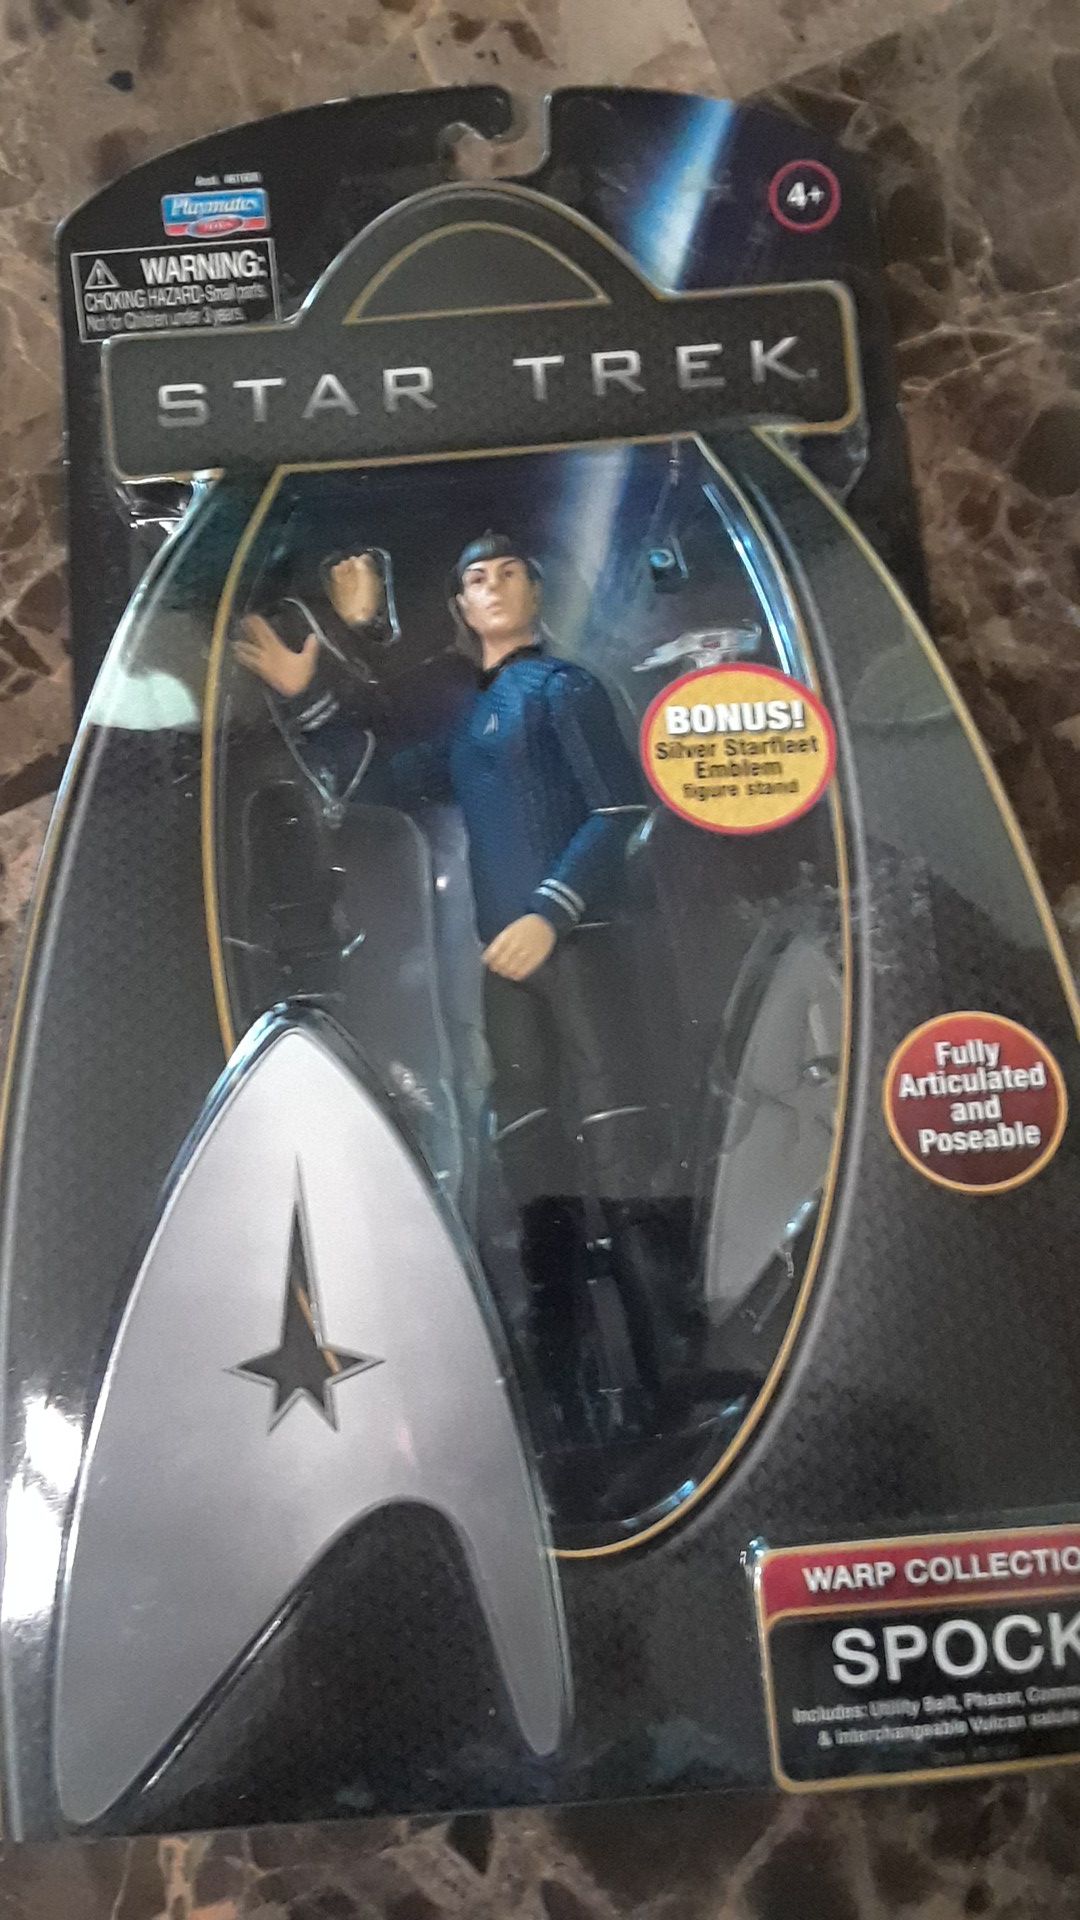 Star Trek Warp Collection figure